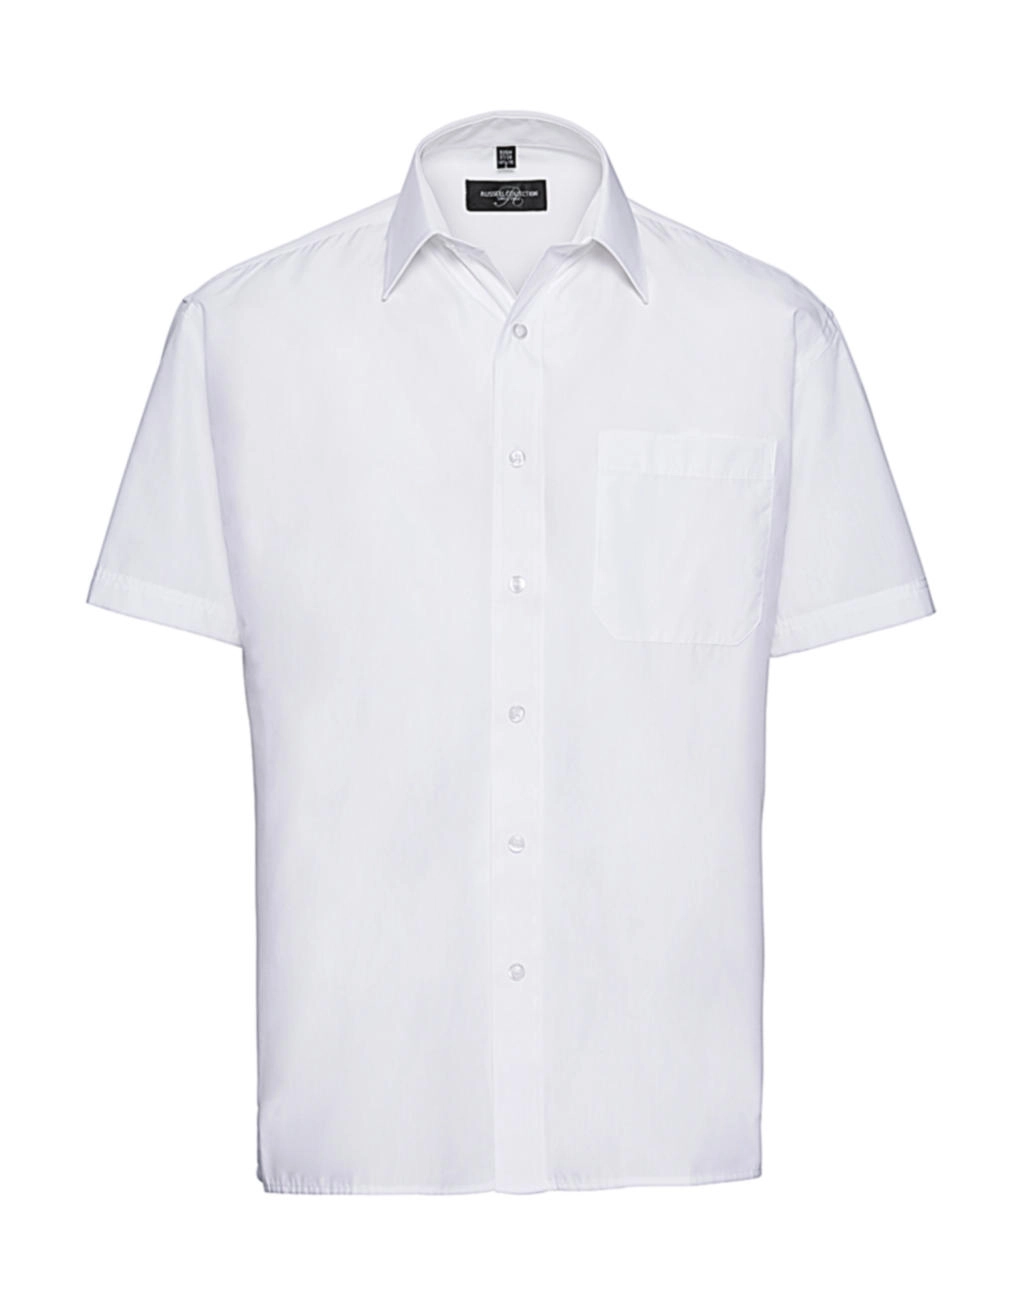 Poplin Shirt zum Besticken und Bedrucken in der Farbe White mit Ihren Logo, Schriftzug oder Motiv.